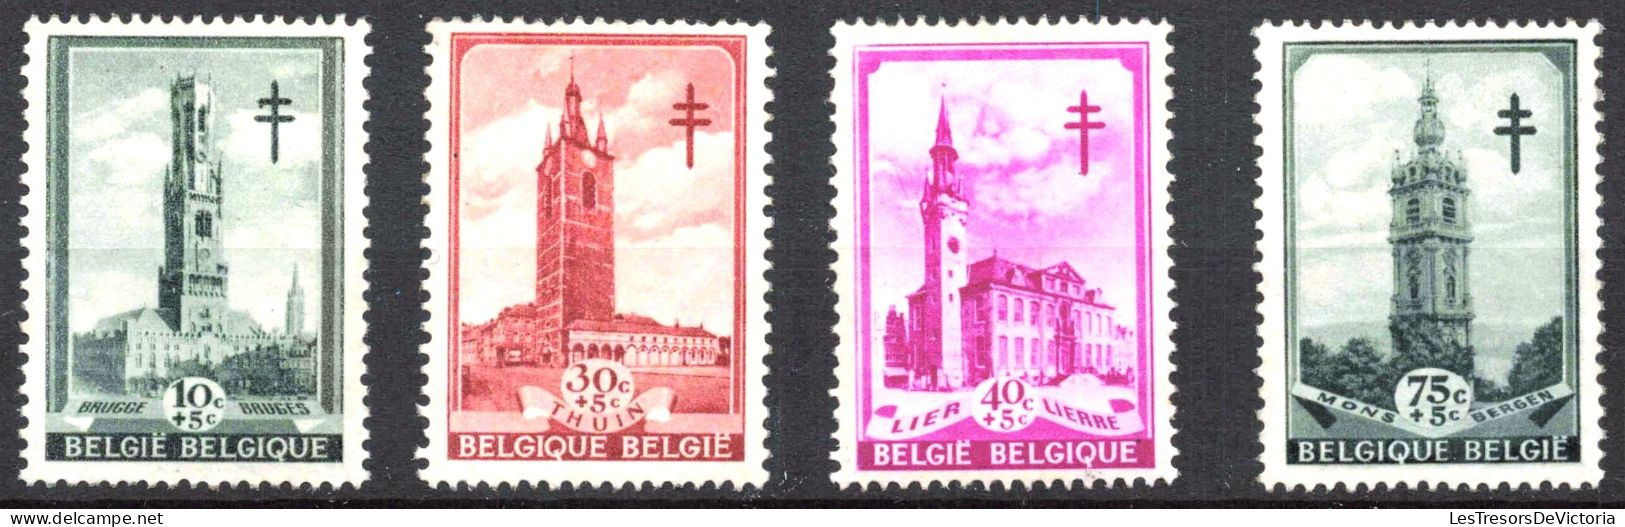 Timbre - Belgique - COB 519/26**MNH - Série Dite Les Beffrois - 1939 - Cote 65 - Ungebraucht